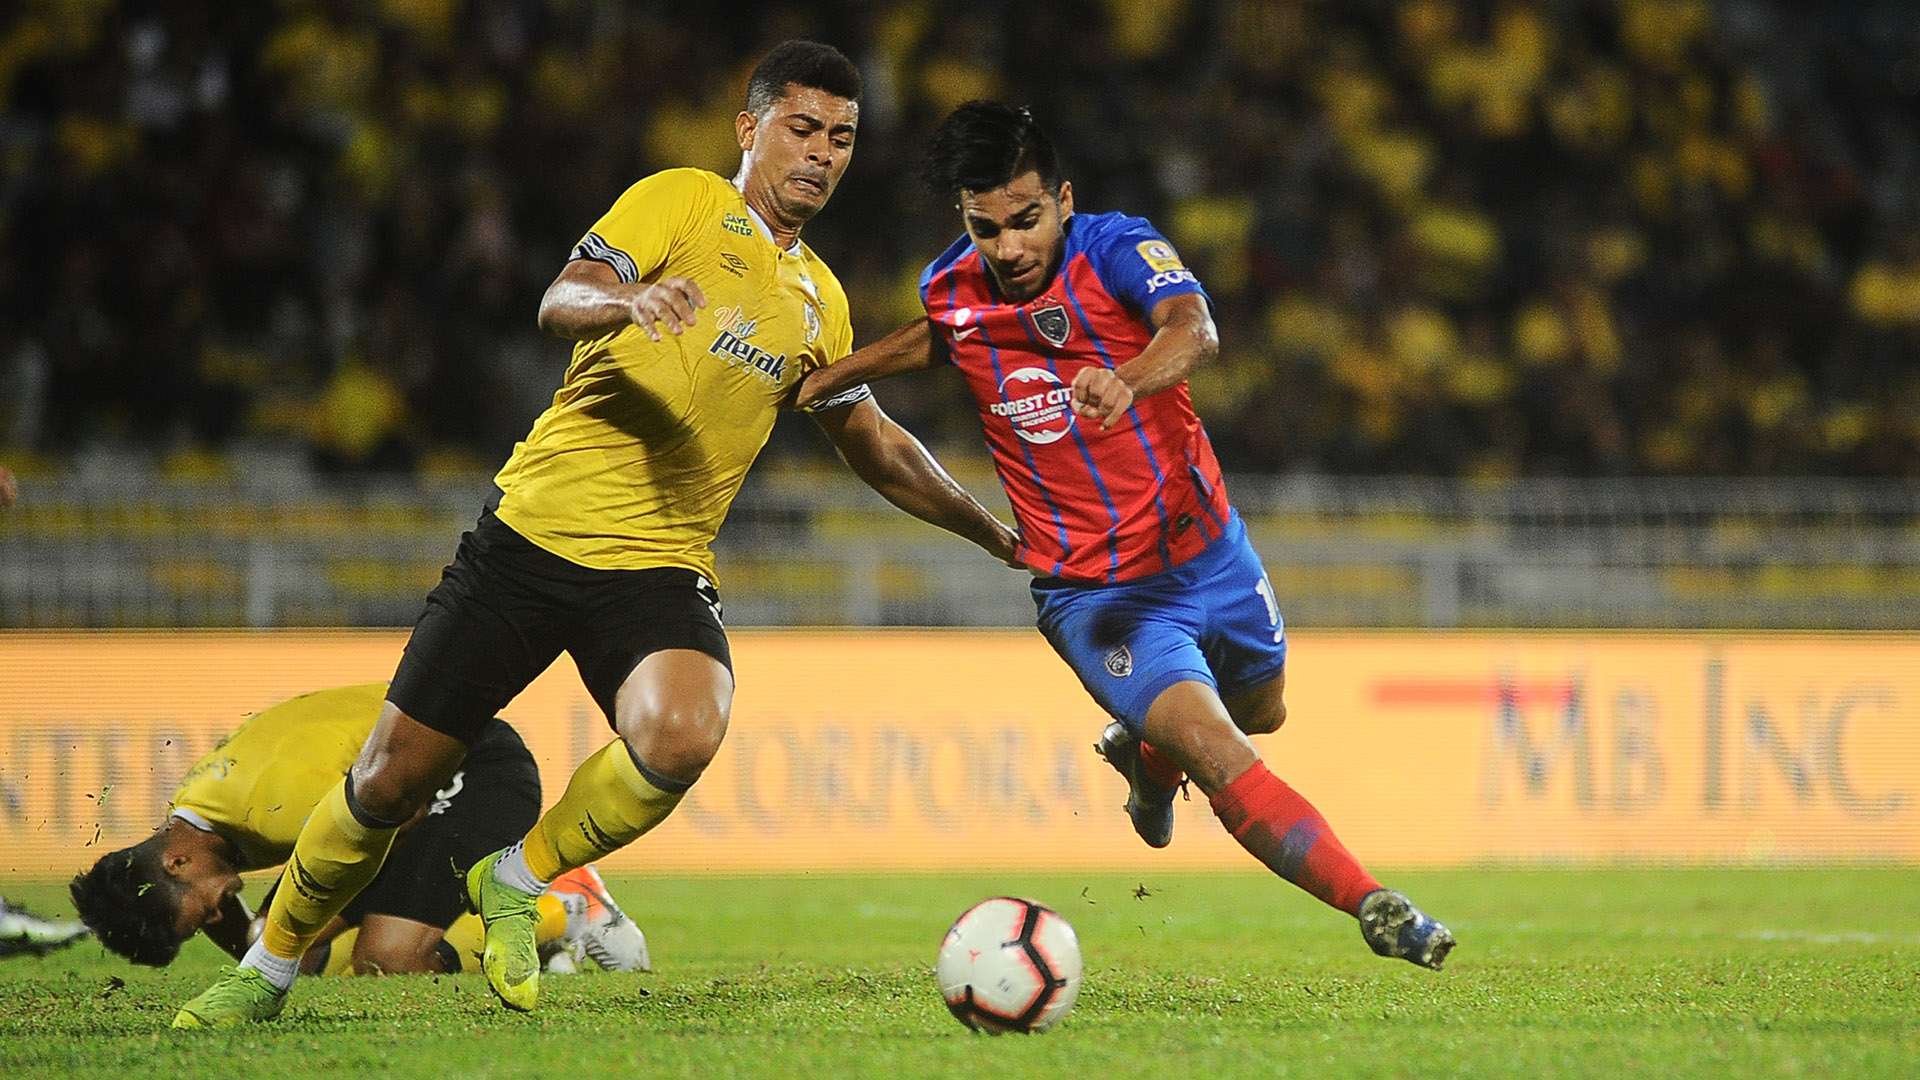 Hussein El Dor, Perak v Johor Darul Ta'zim, Malaysia Super League, 6 Jul 2019